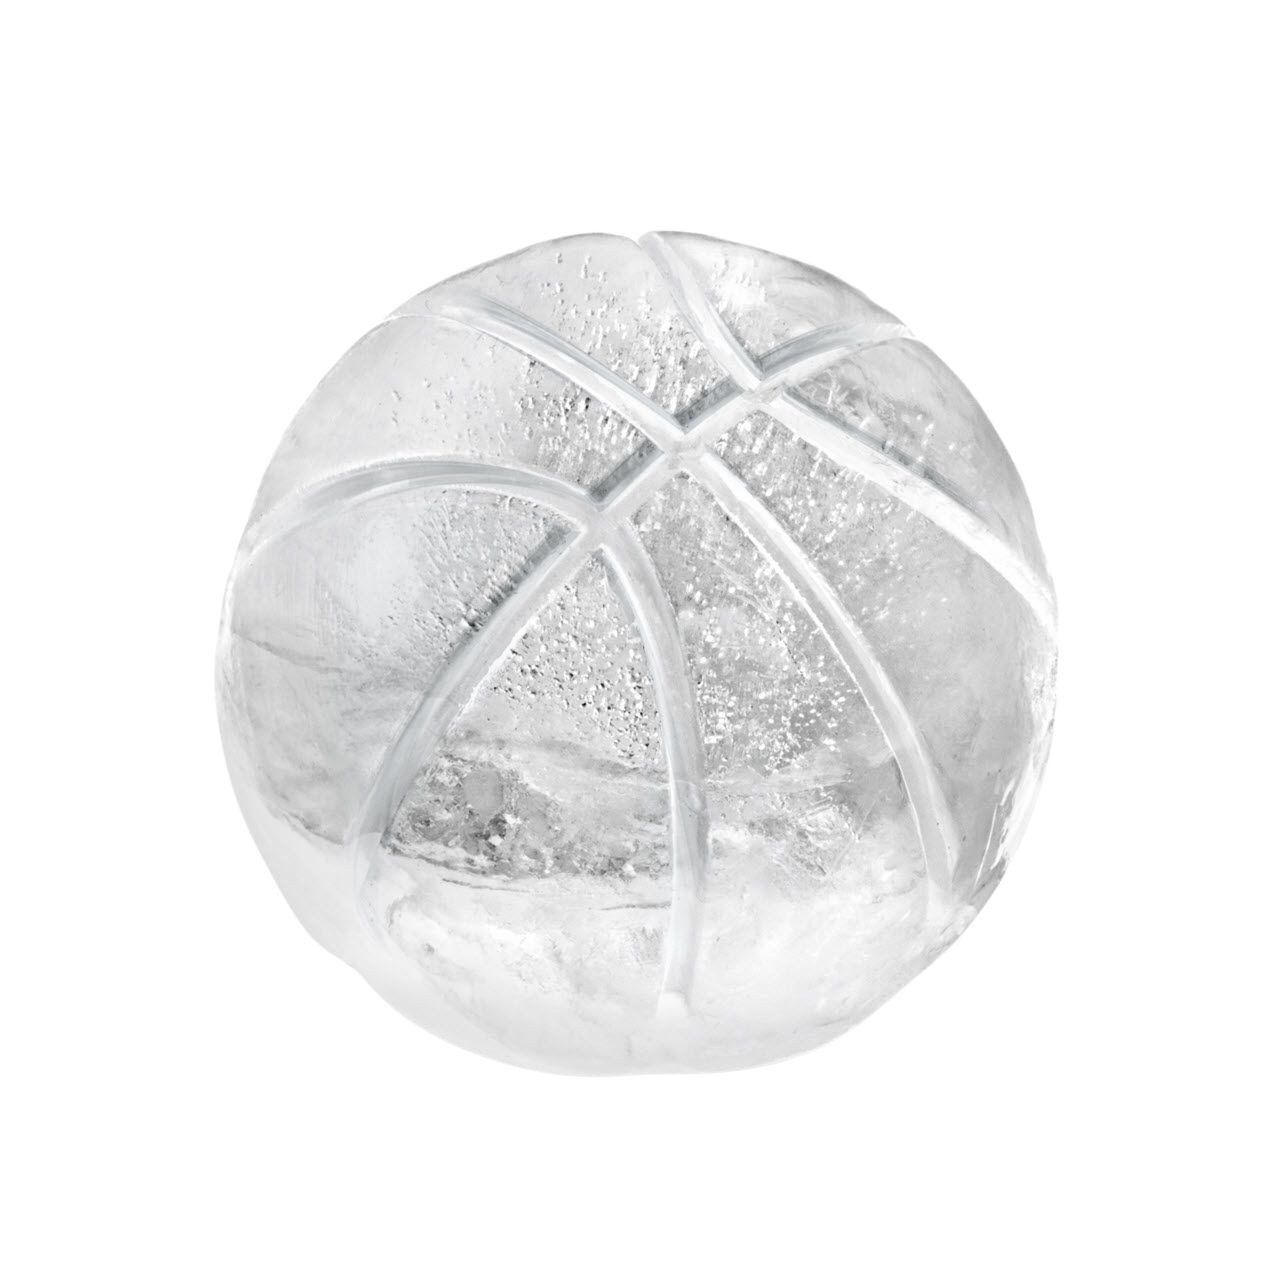 Tovolo - Basketball Ice Mold S/2